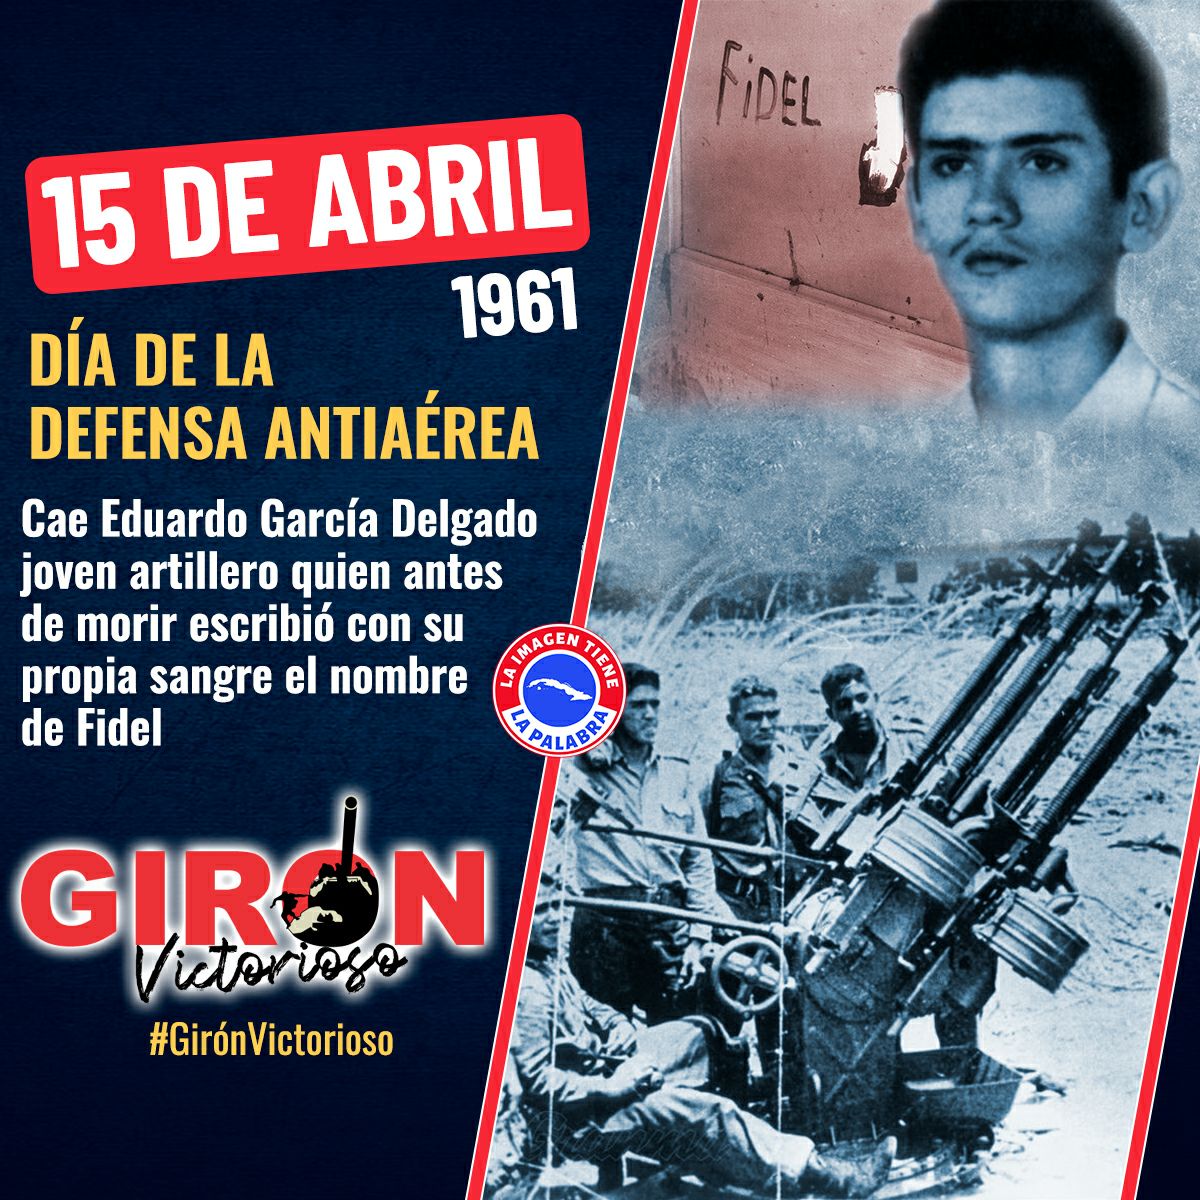 Cae Eduardo García Delgado, joven artillero que escribió con su sangre antes de morir el nombre de 'Fidel' #GirónVictorioso